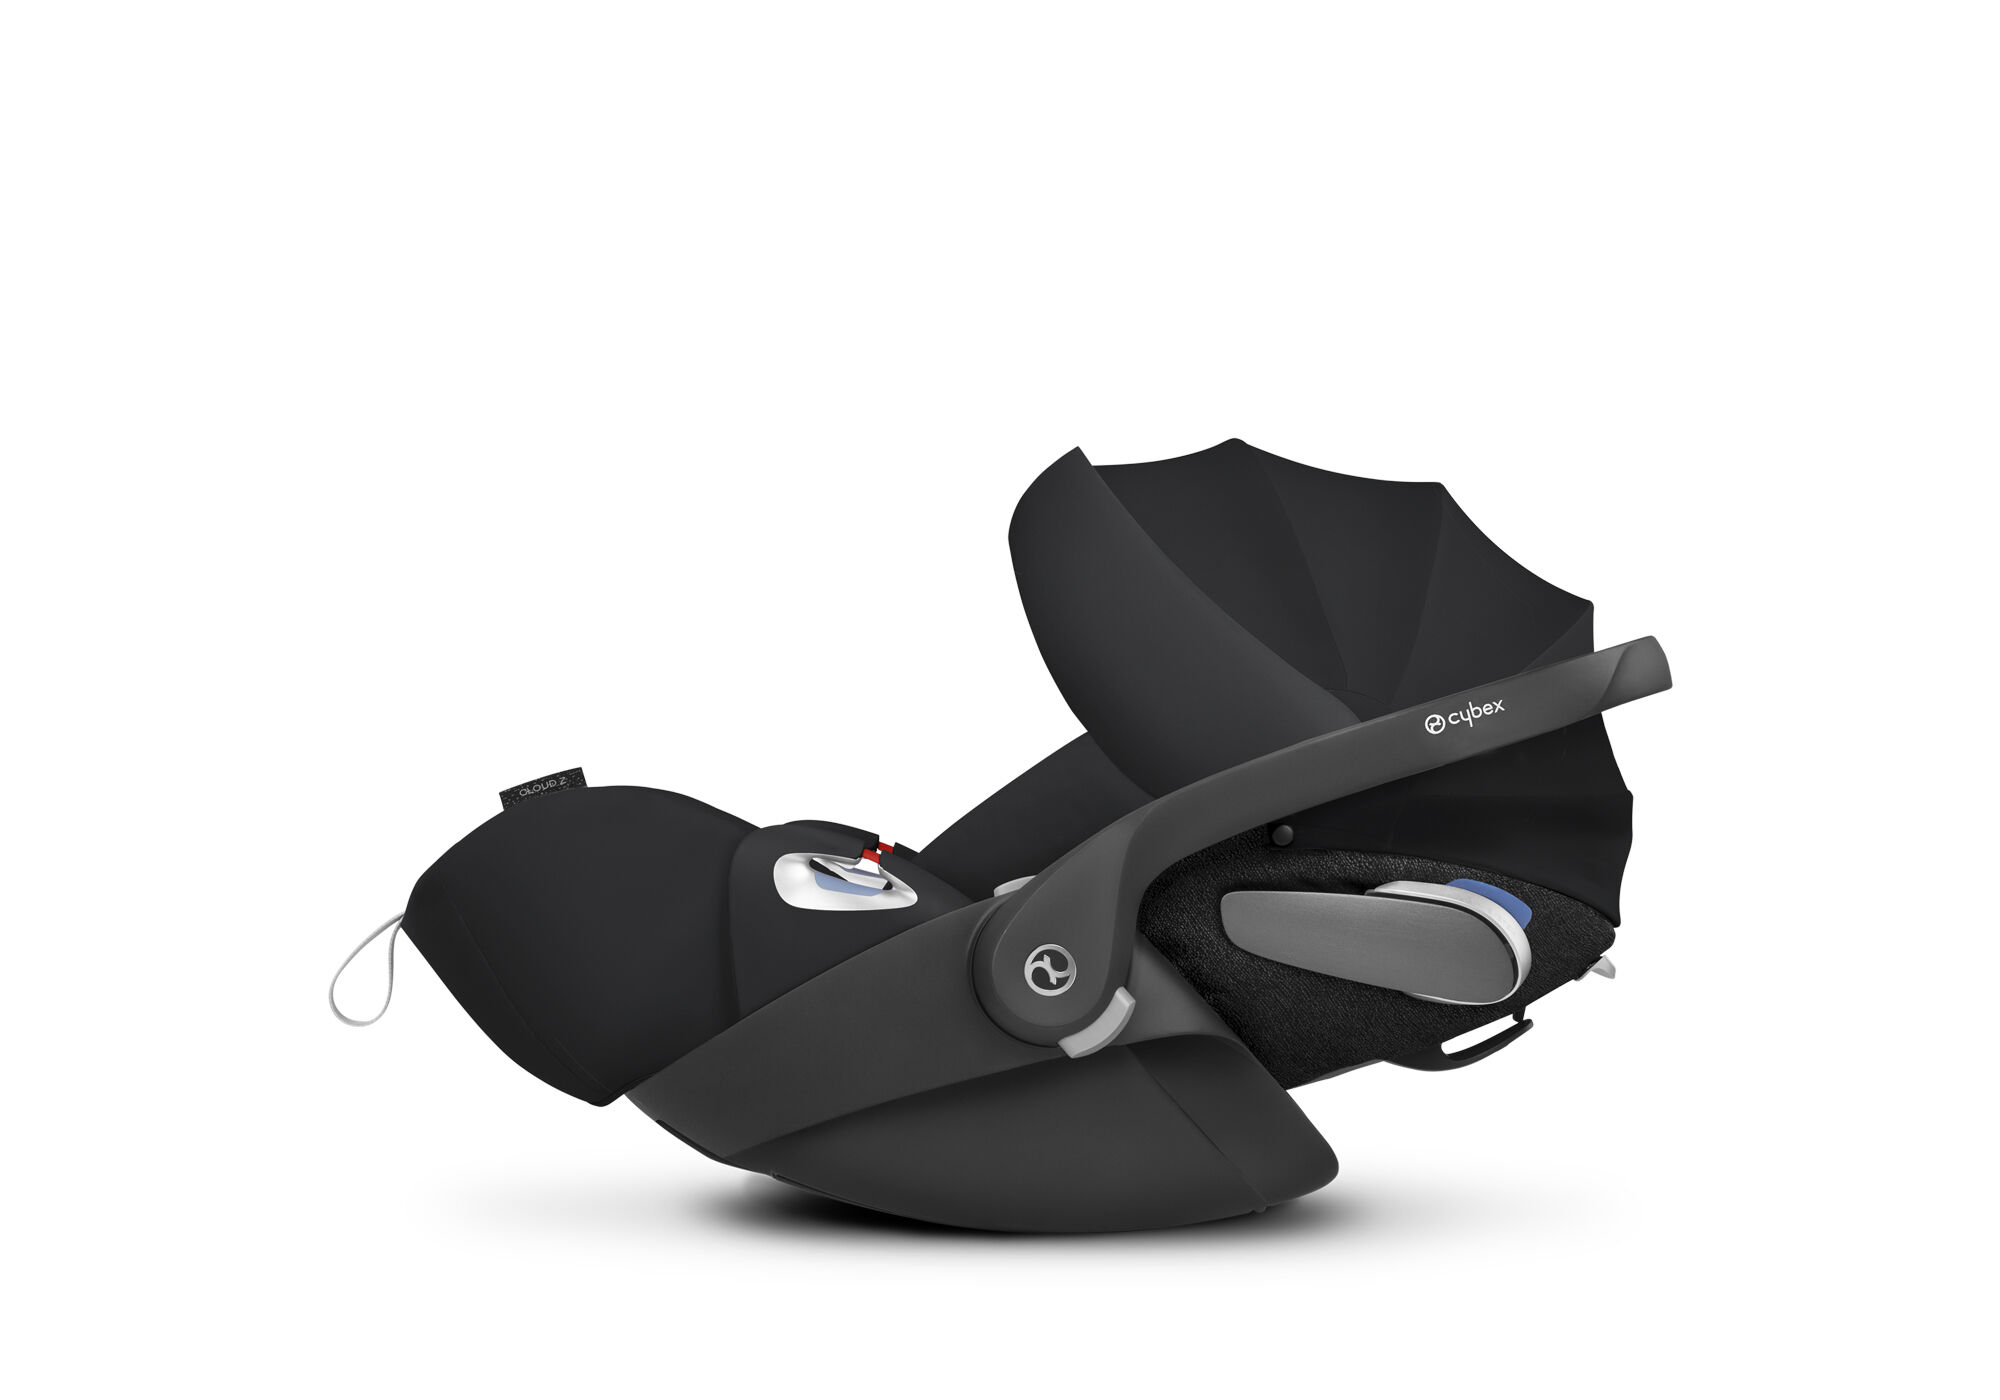 Cloud Z i-Size | Infant Car Seat | CYBEX Platinum